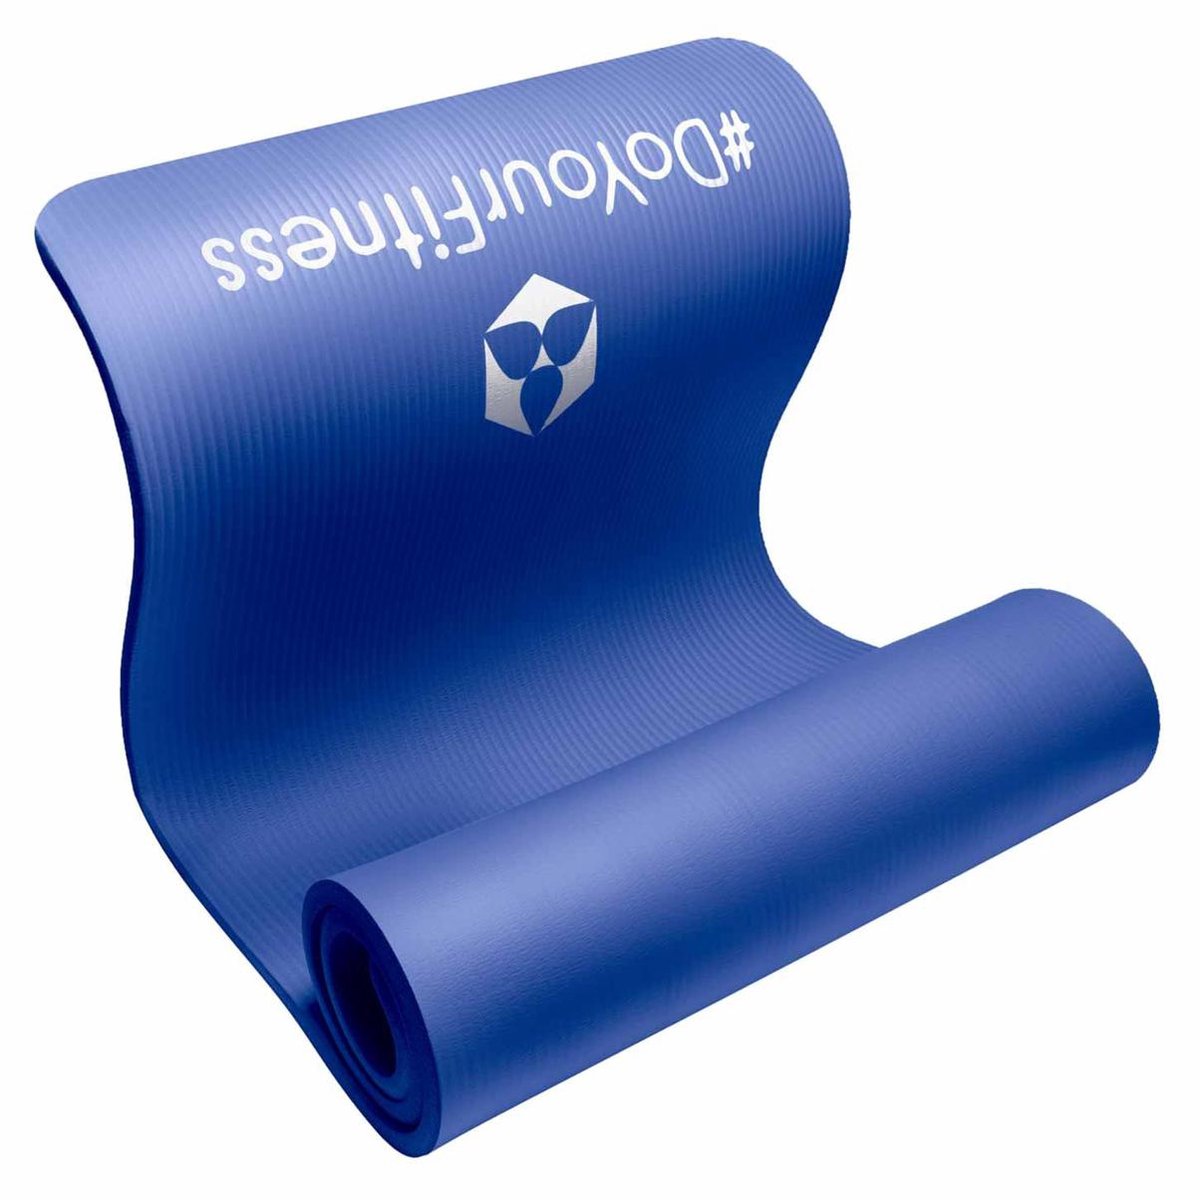 #DoYourFitness - dikke fitness mat perfect voor pilates, aerobics, yoga - »Yamuna« - non-slip, duurzaam, huidvriendelijk, slijtvast - 183 x 61 x 1,5 cm - blauw - #DoYourFitness